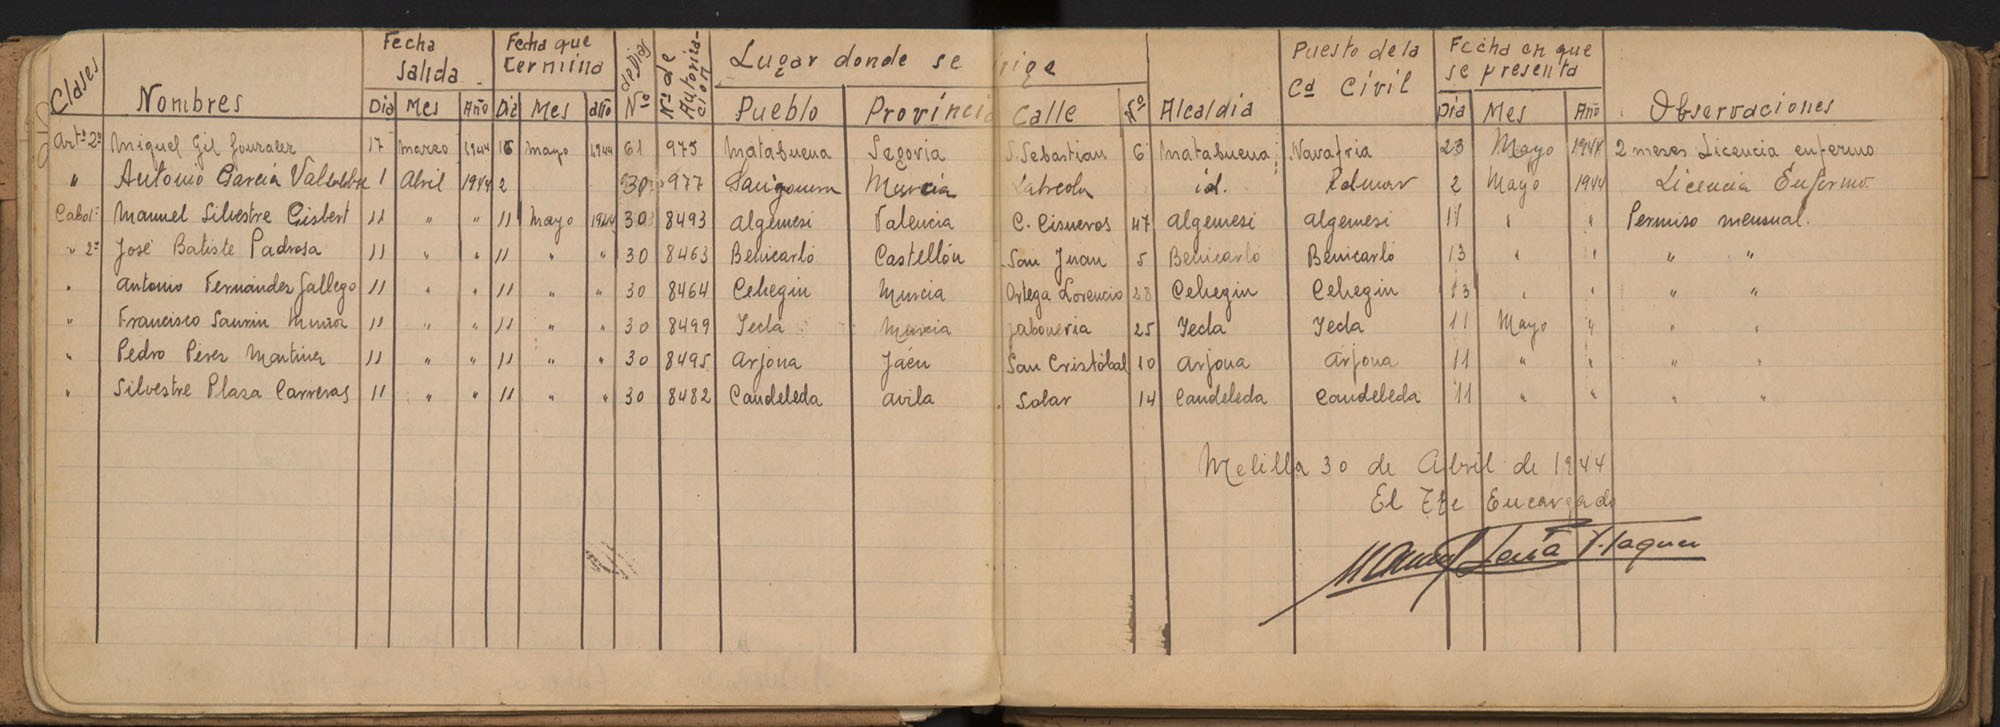 Libro registro de los permisos y de licencias del personal del Regimiento de Artillería nº 50 de Melilla. Años 1940-1952.